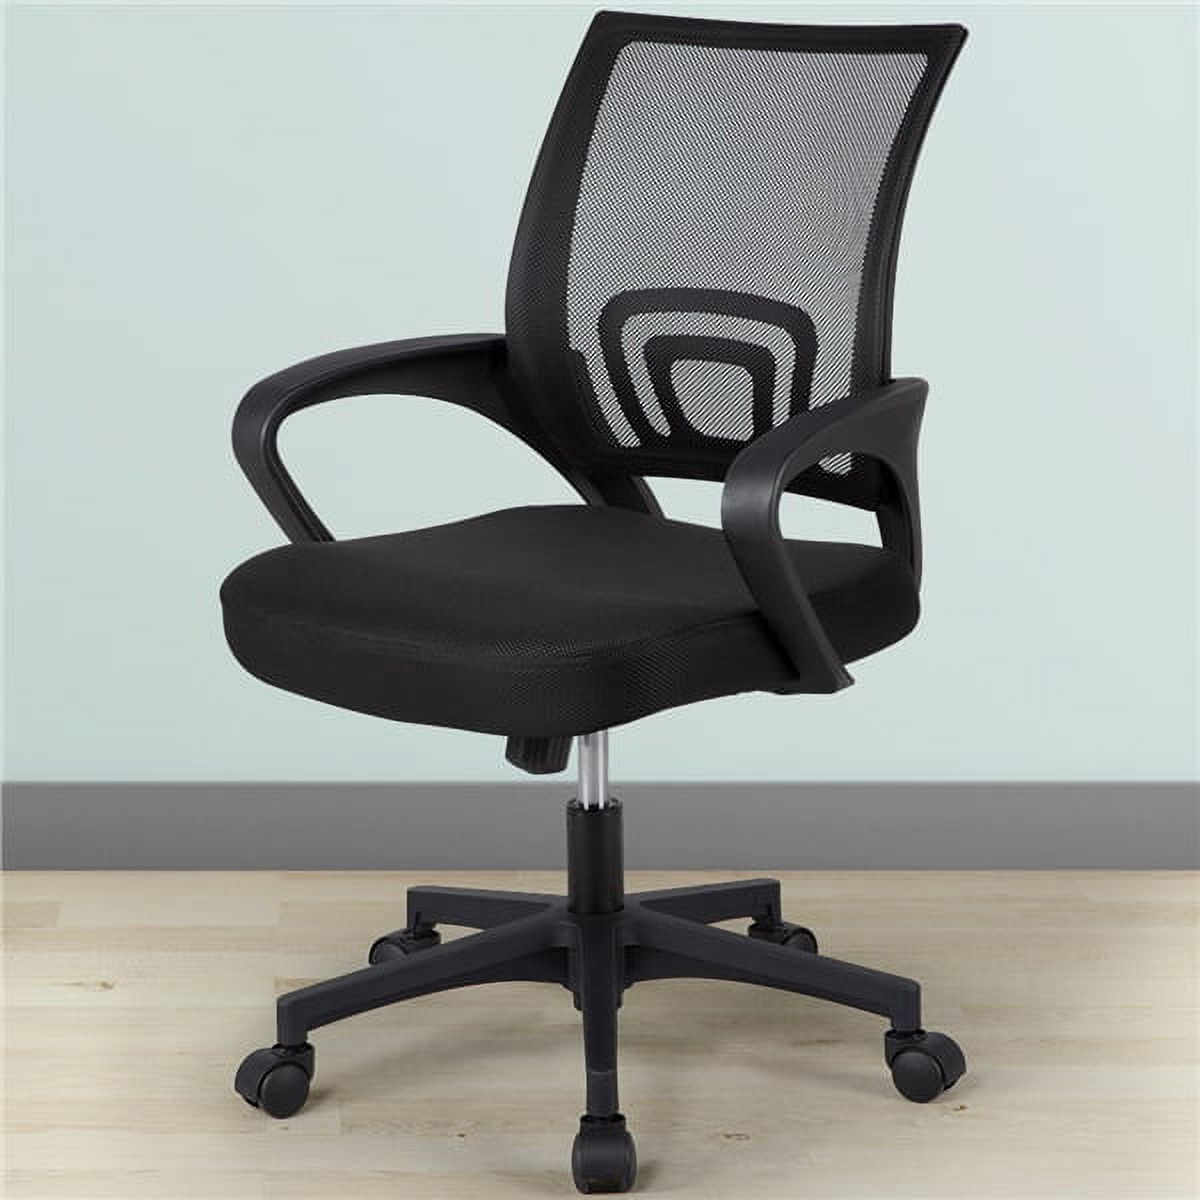 Alden Design Adjustable Mesh Swivel Office Chair with Armrest, Set of 2, Black - image 4 of 12